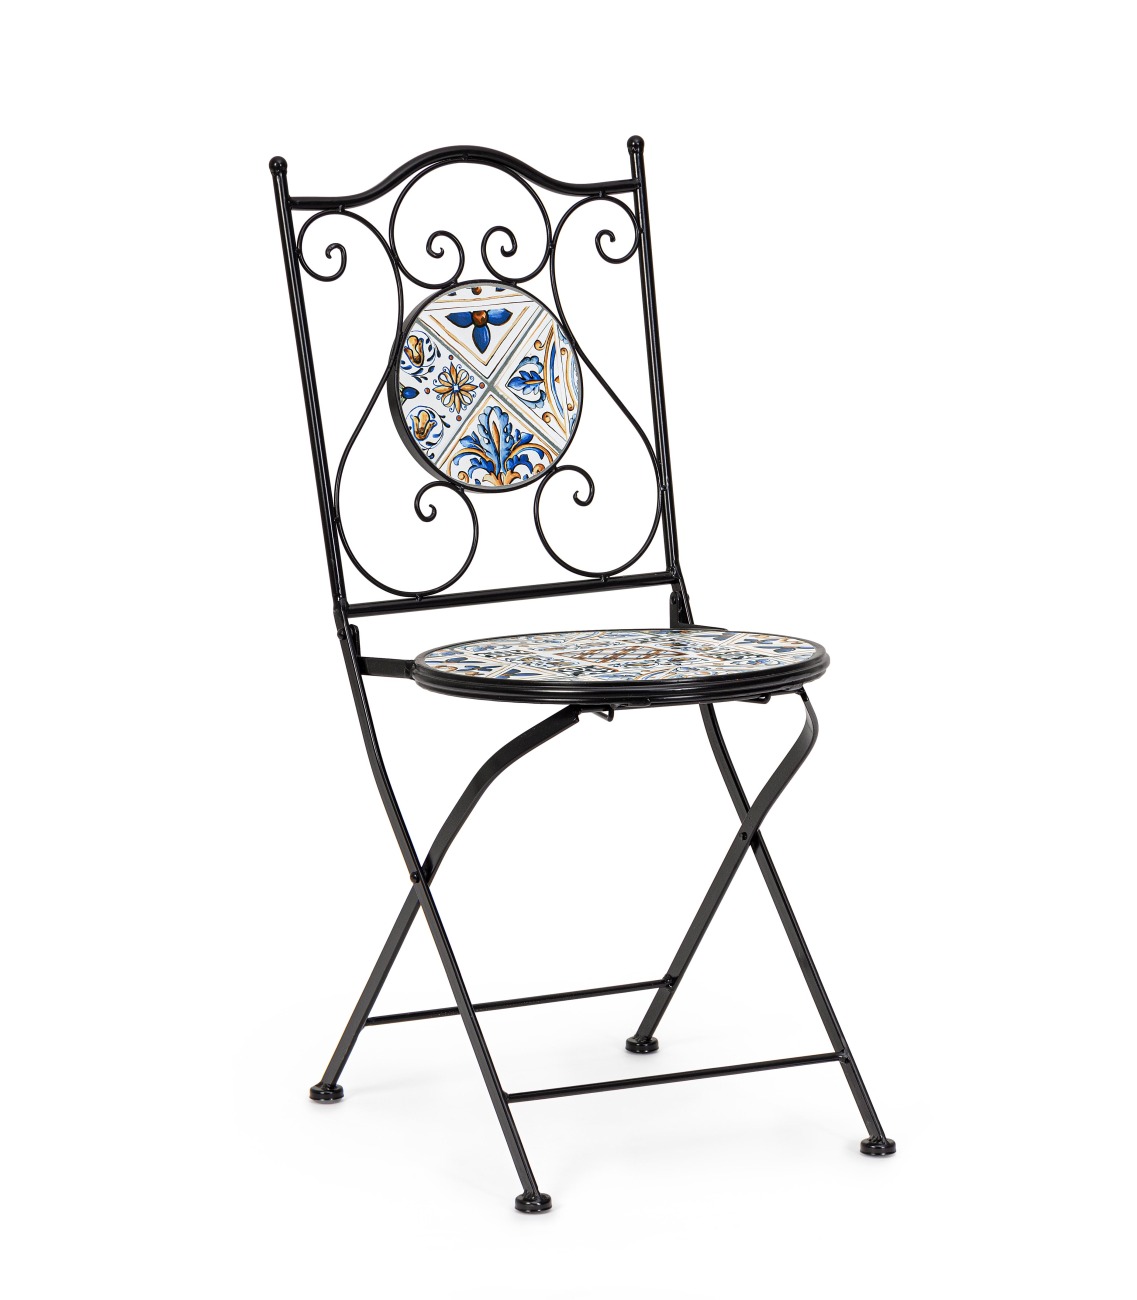 Der Gartenstuhl Mykonos überzeugt mit seinem modernen Design. Gefertigt wurde er aus Keramik, welches einen hellen Farbton besitzt. Das Gestell ist aus Metall und hat eine schwarze Farbe. Der Stuhl ist klappbar.